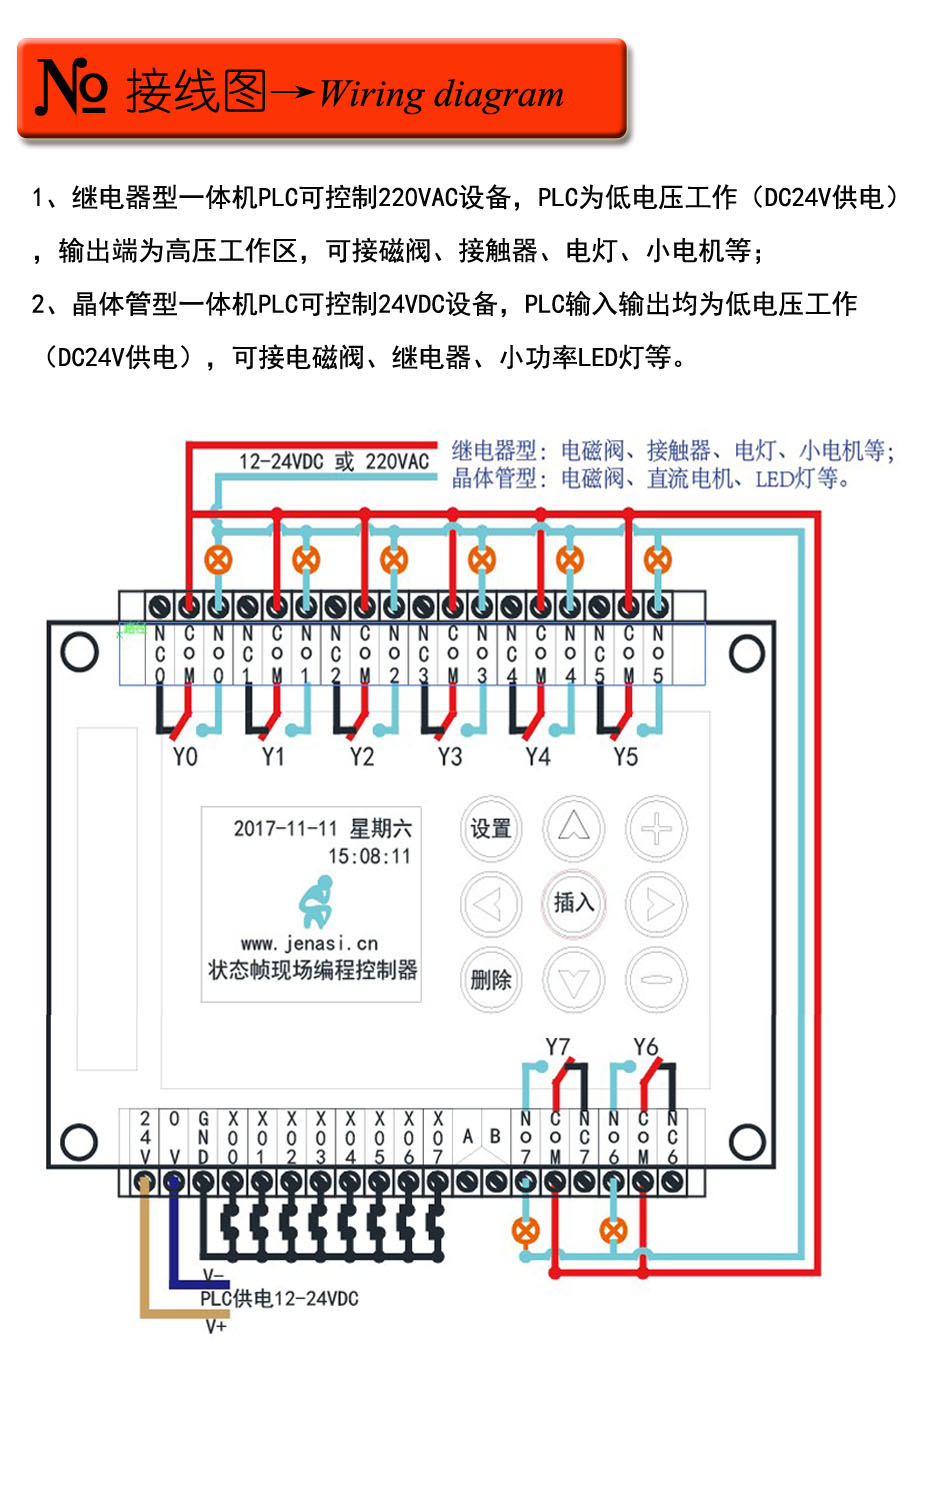 中文可编程延时时间继电器 8进8出气缸电磁阀控制器循环定时开关简易PLC一体机 时间控制,逻辑控制,气缸电磁阀,简易plc,定时开关